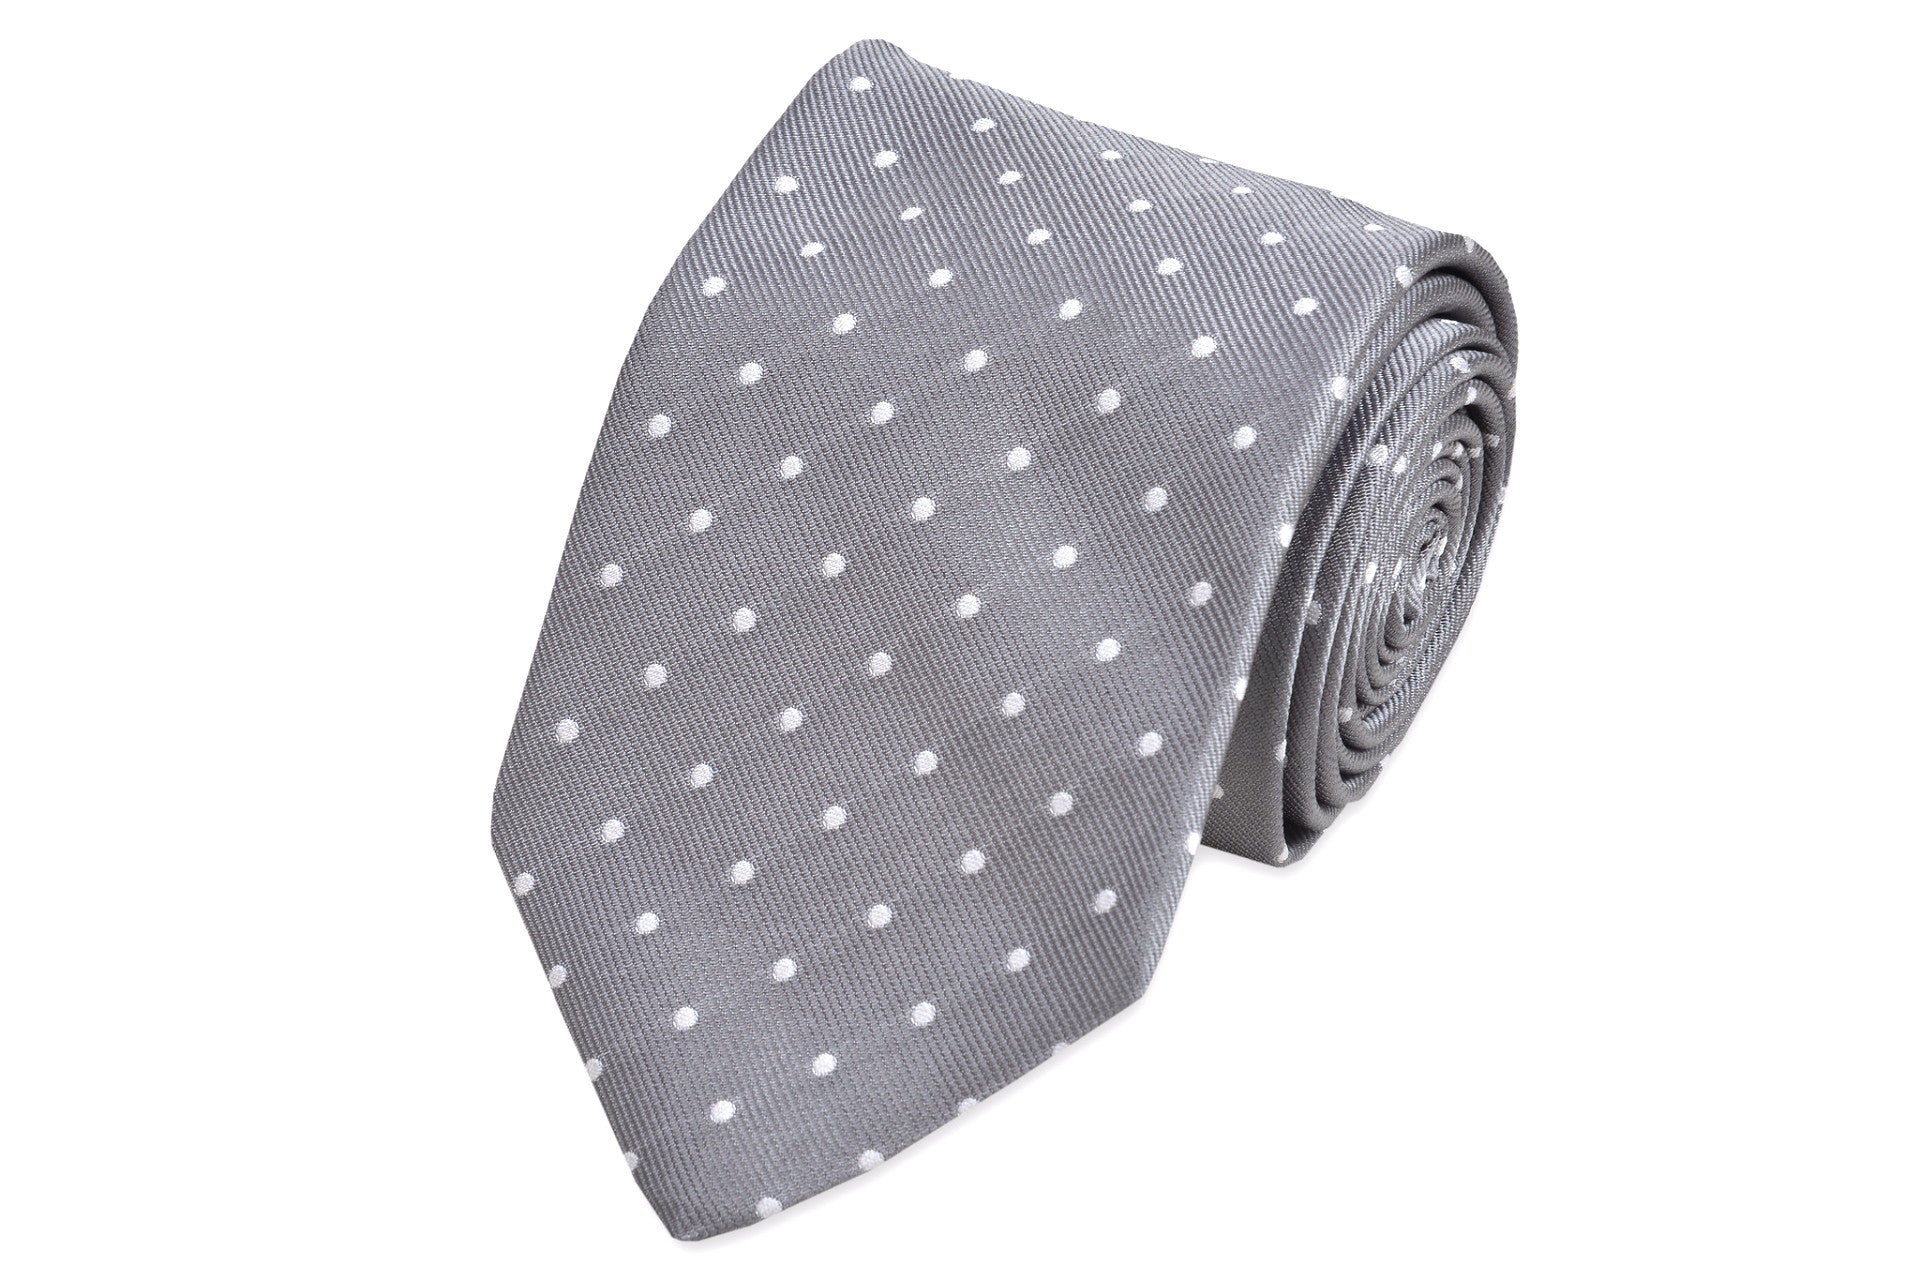 Dusty Gray Dot Necktie